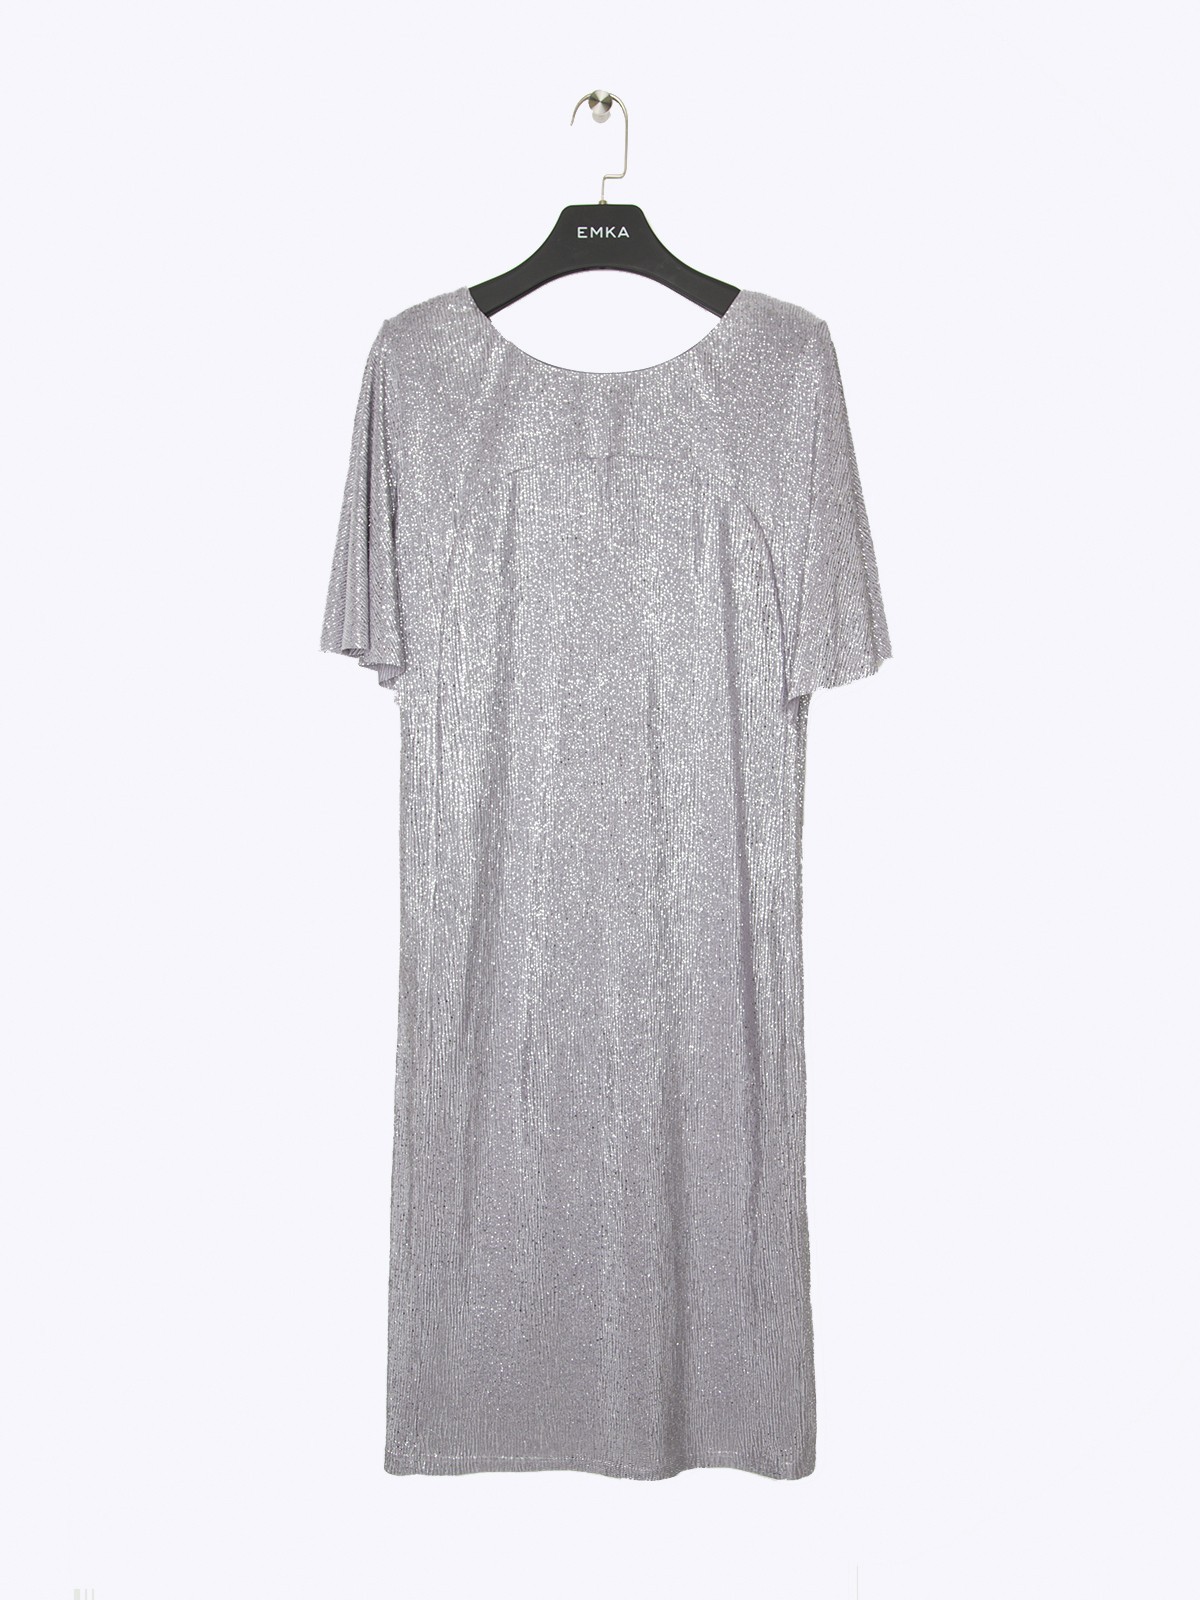  платье из сияющей текстурной ткани